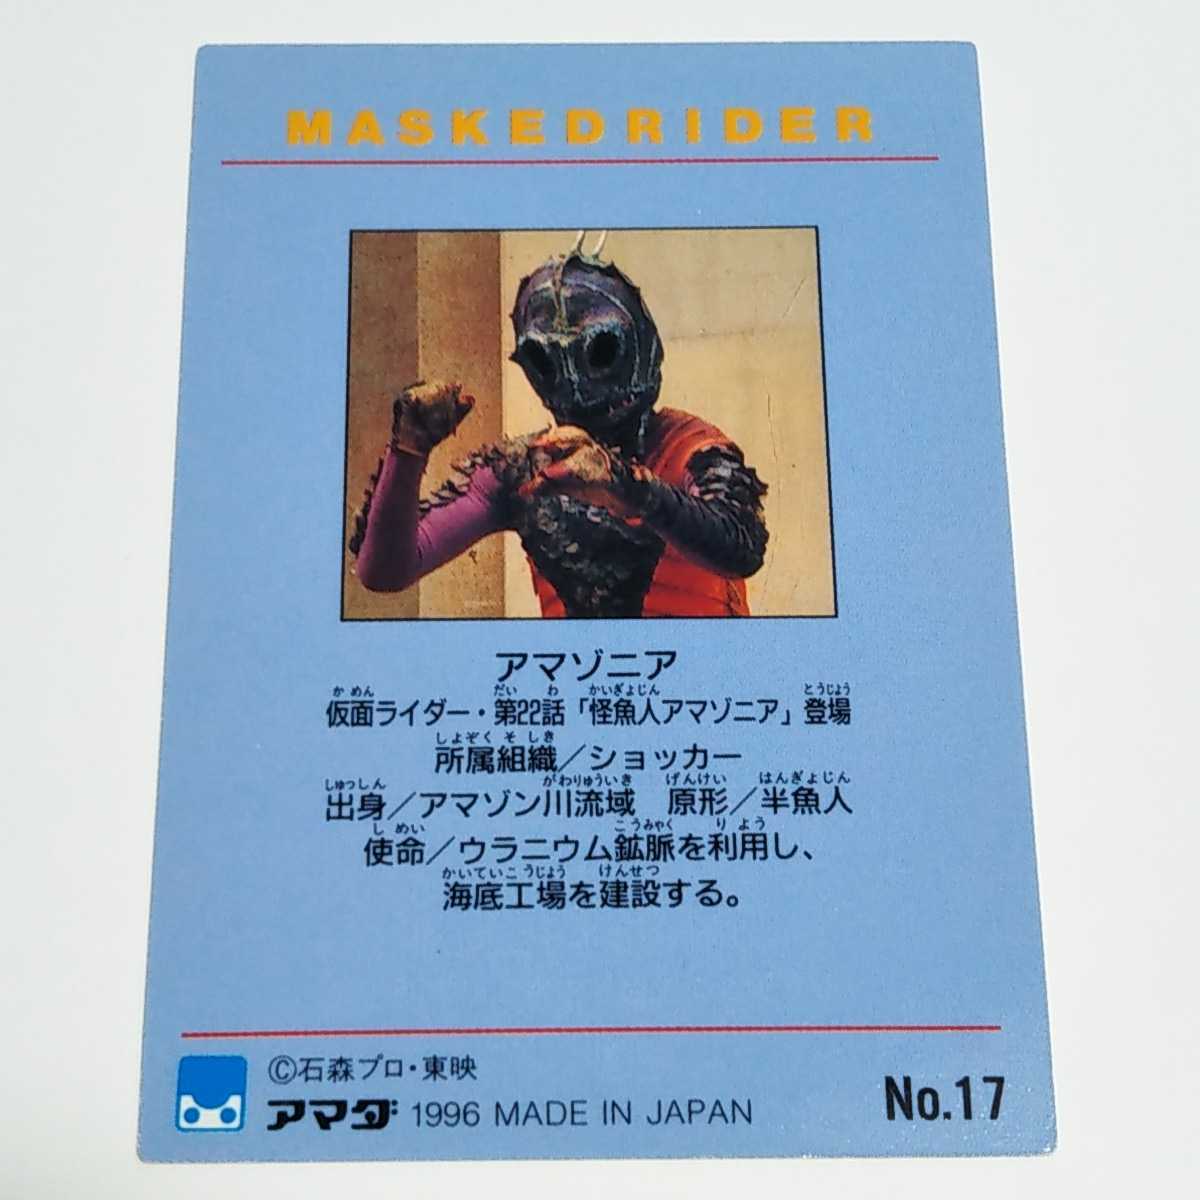 アマダ 1996 仮面ライダー トレーディングコレクション アマゾニア カード No.17_画像2